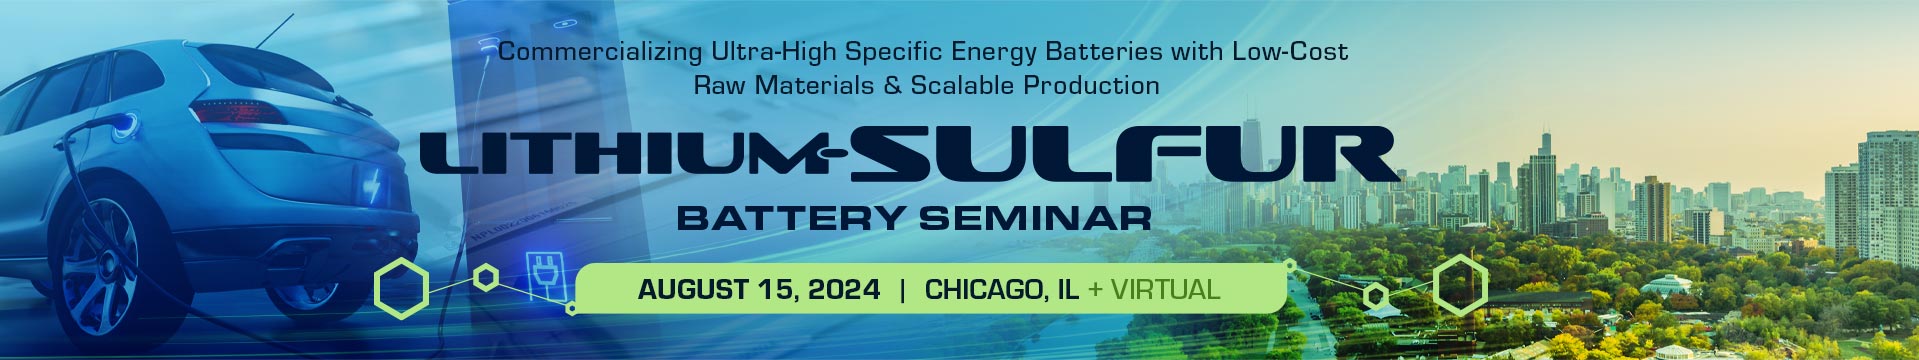 Lithium-Sulfur Battery Seminar 